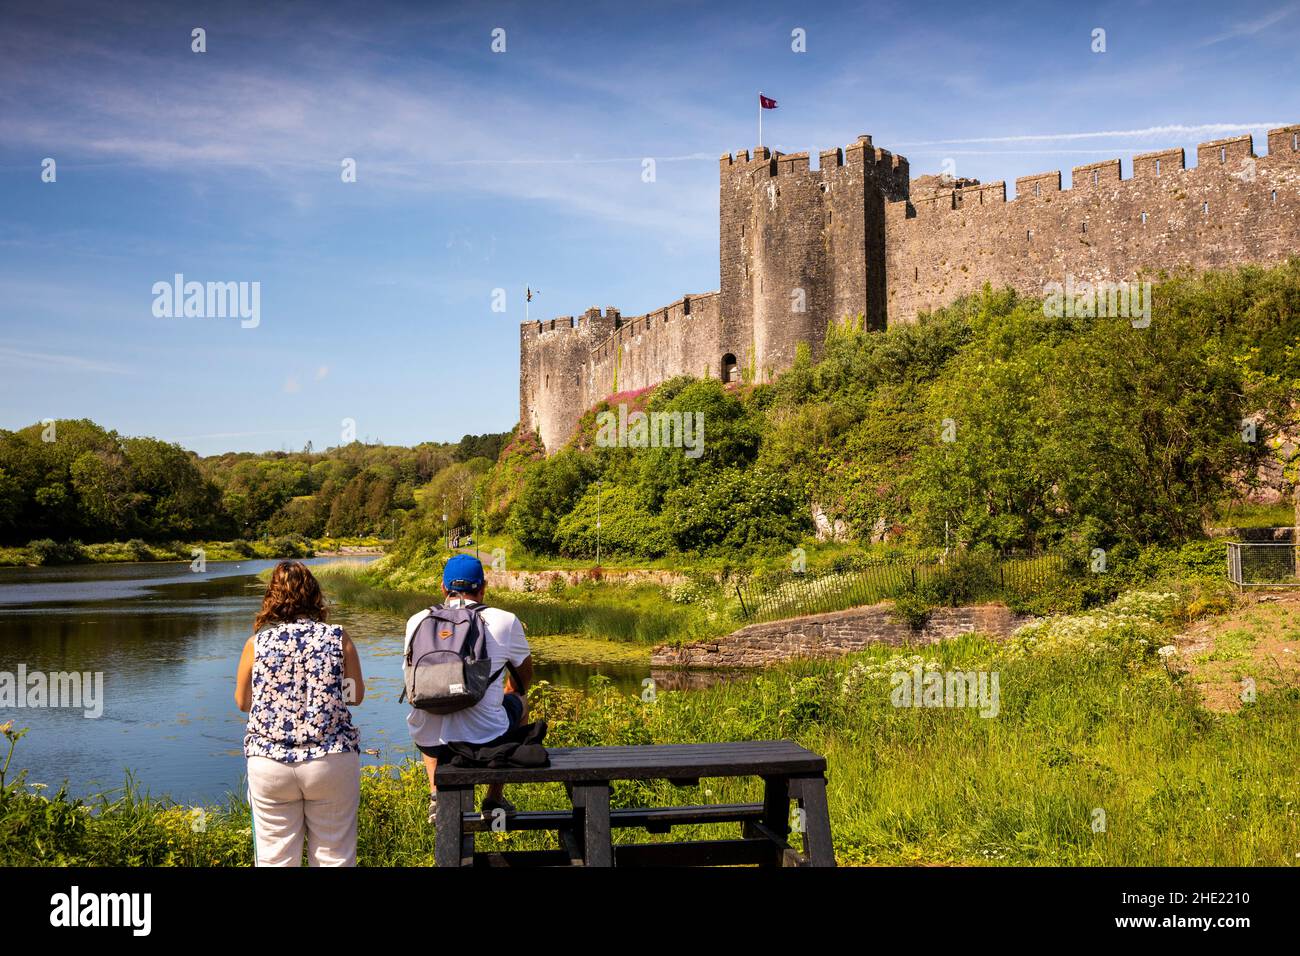 Royaume-Uni, pays de Galles, Pembrokeshire, Pembroke, visiteurs sur une table de pique-nique sous les murs du château Banque D'Images